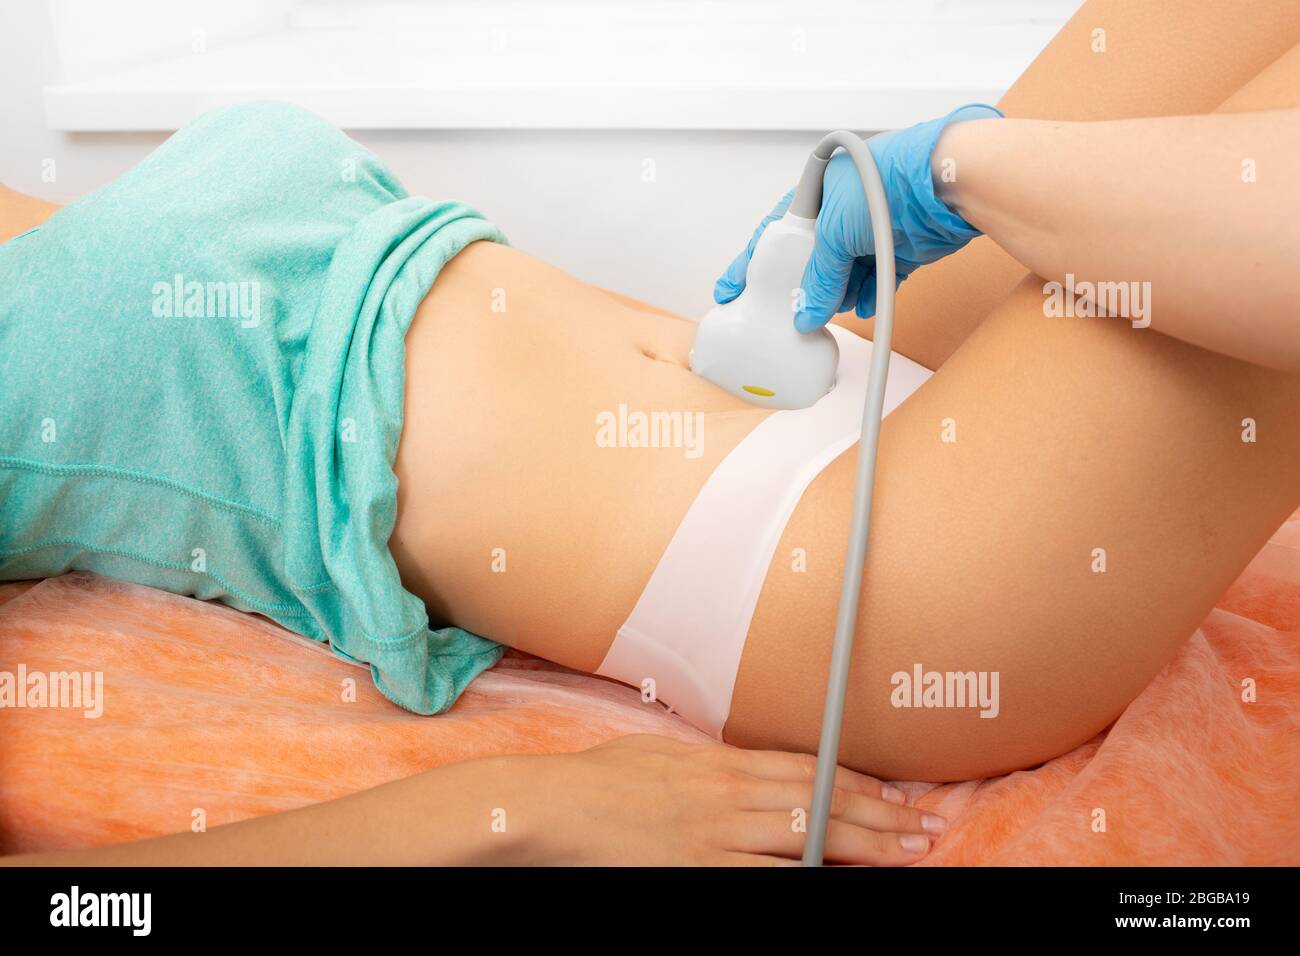 Ecografia ovarica, dispositivo ecografico sullo stomaco del paziente. Esame sanitario femminile Foto Stock